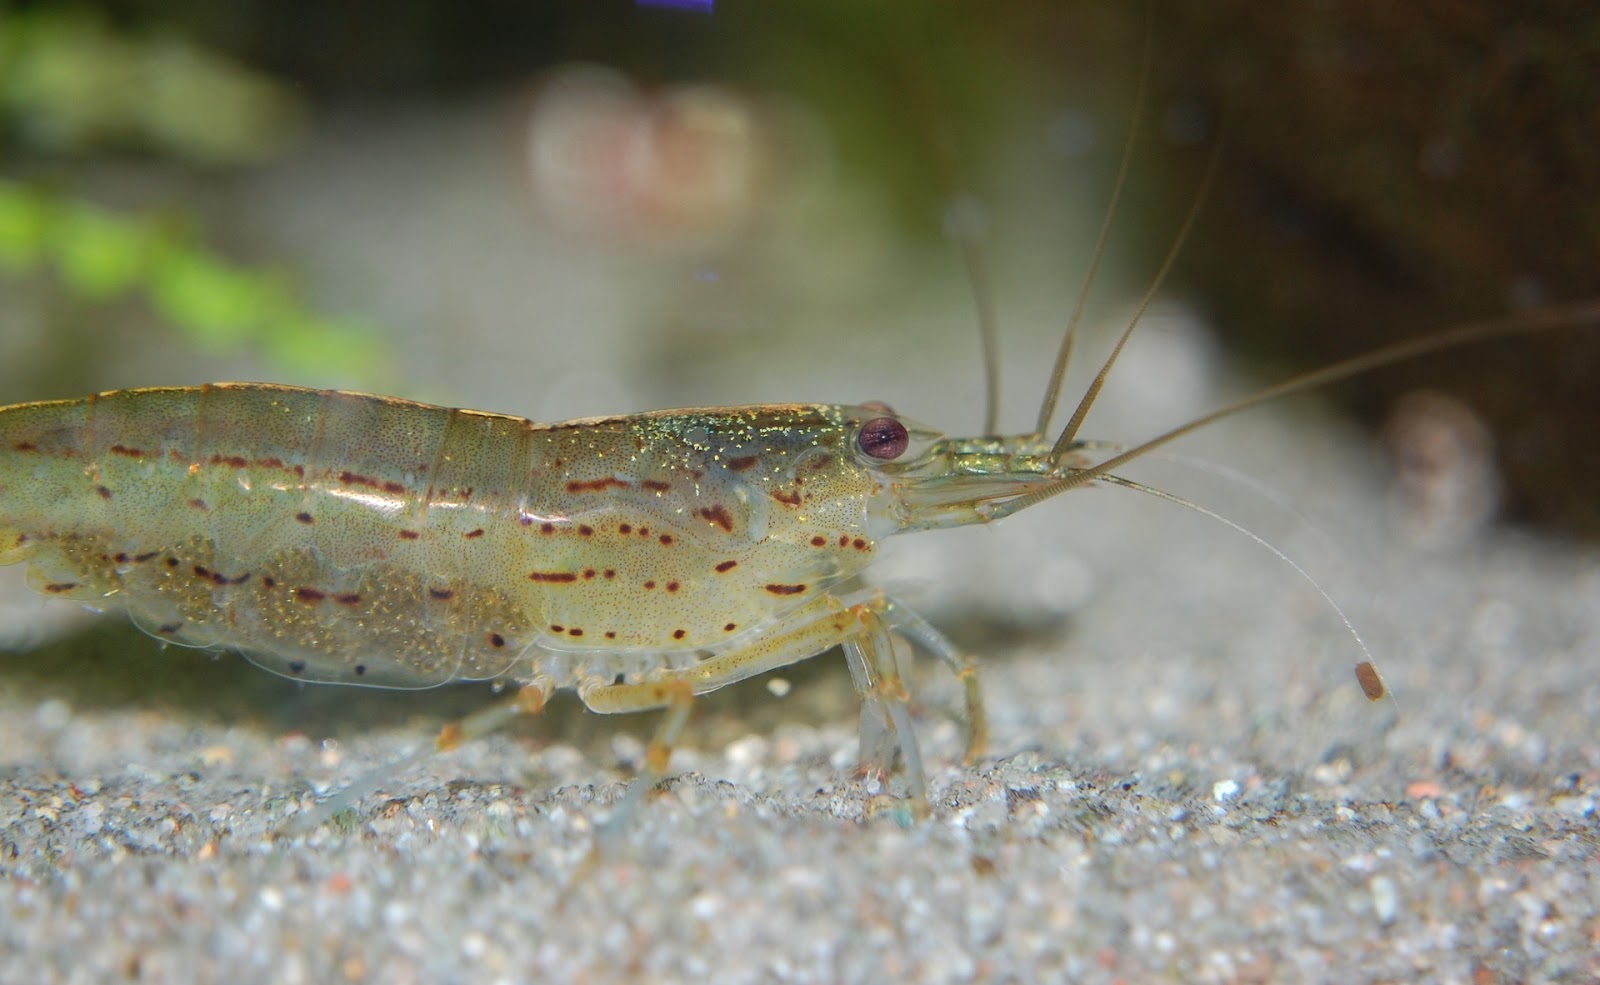 Close-up of a shrimp